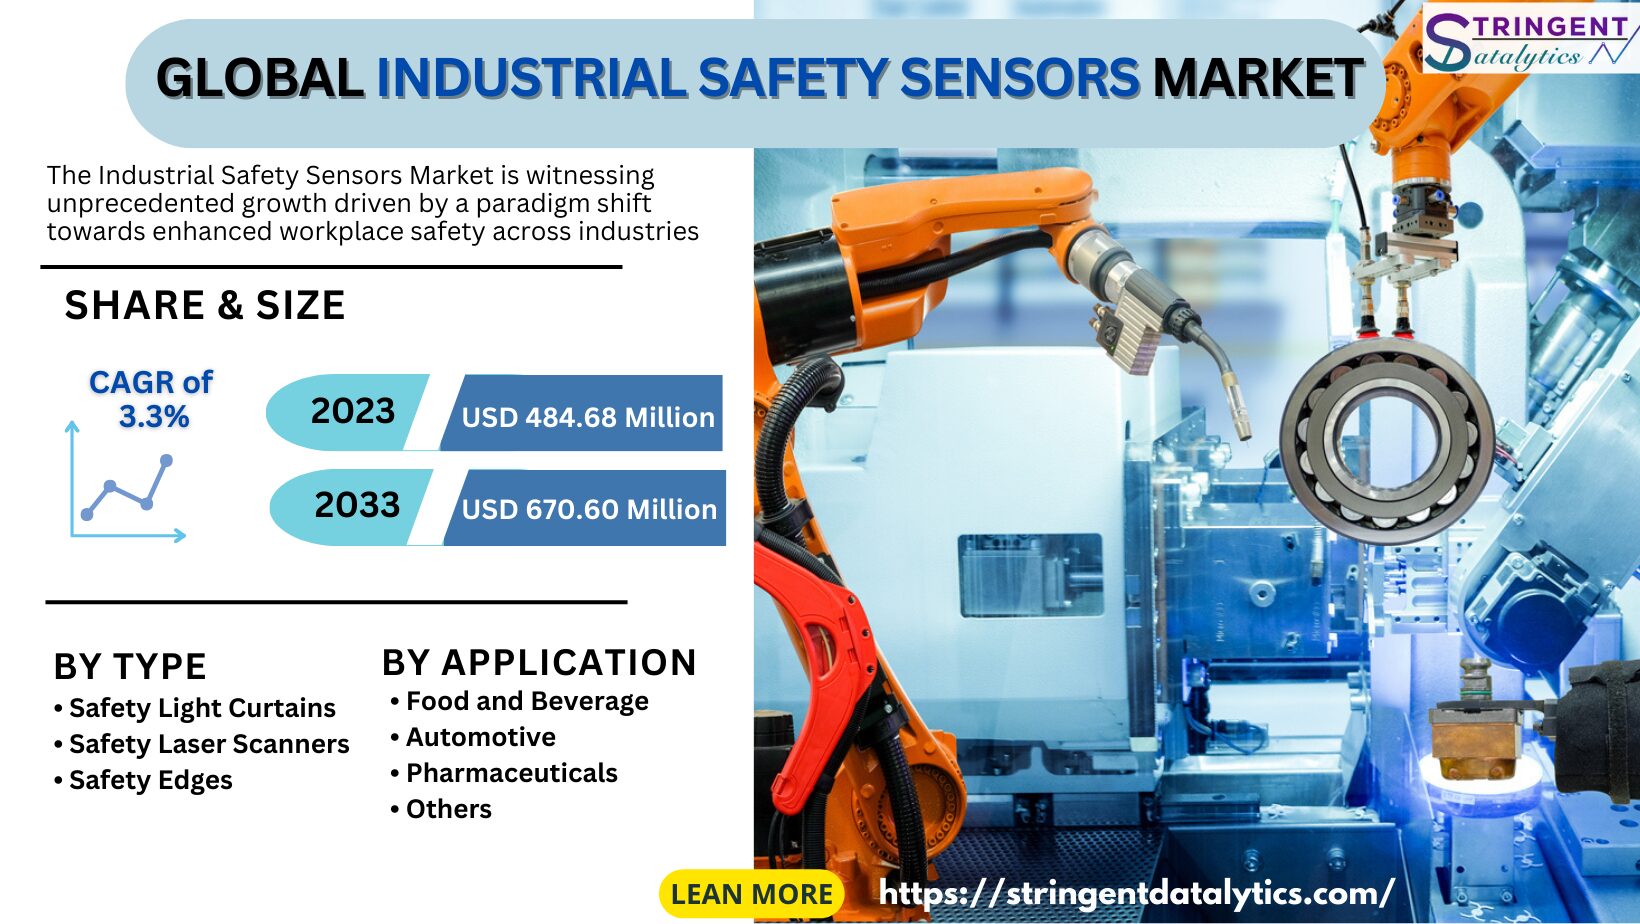 Industrial Safety Sensors Market